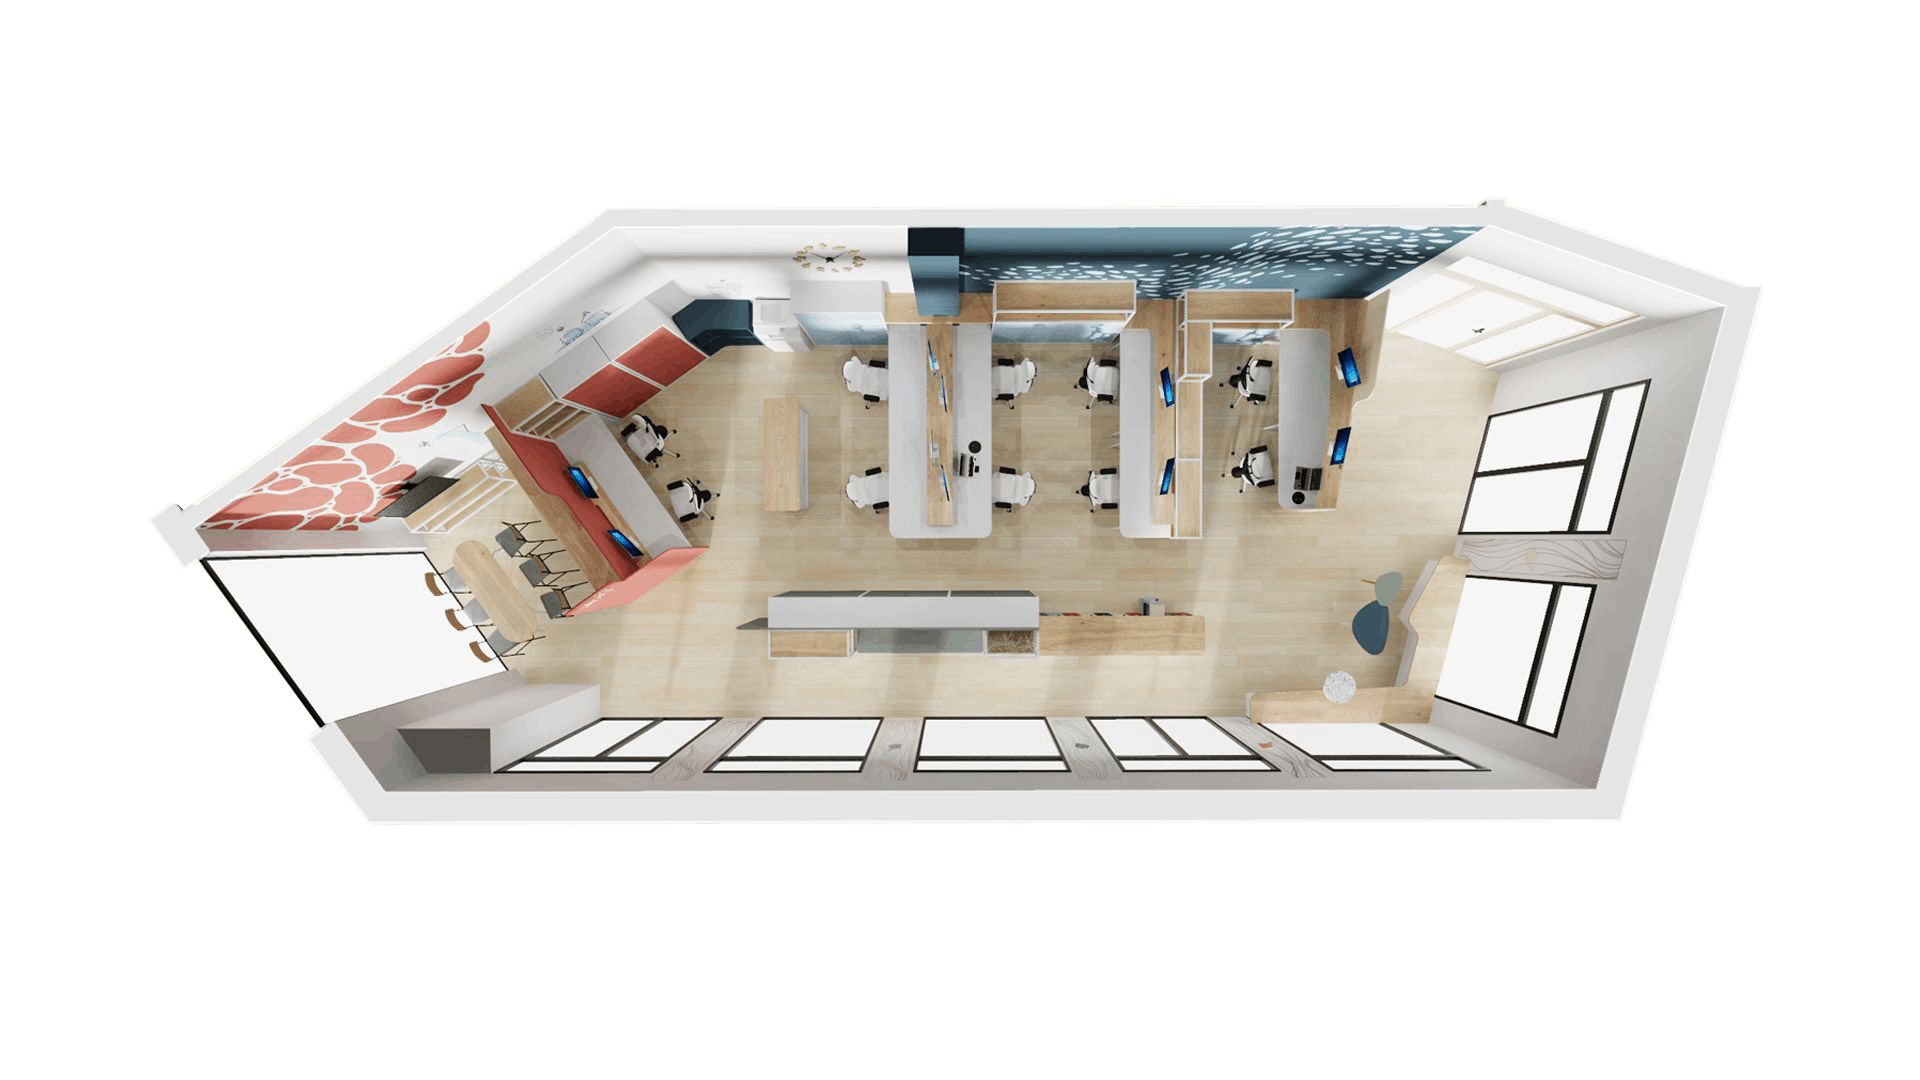 Modélisation 3D des nouveaux locaux de la CCI de Saint-Nazaire, vue du dessus, montrant comme Studio Katra a pensé ce nouvel espace en amont du projet.